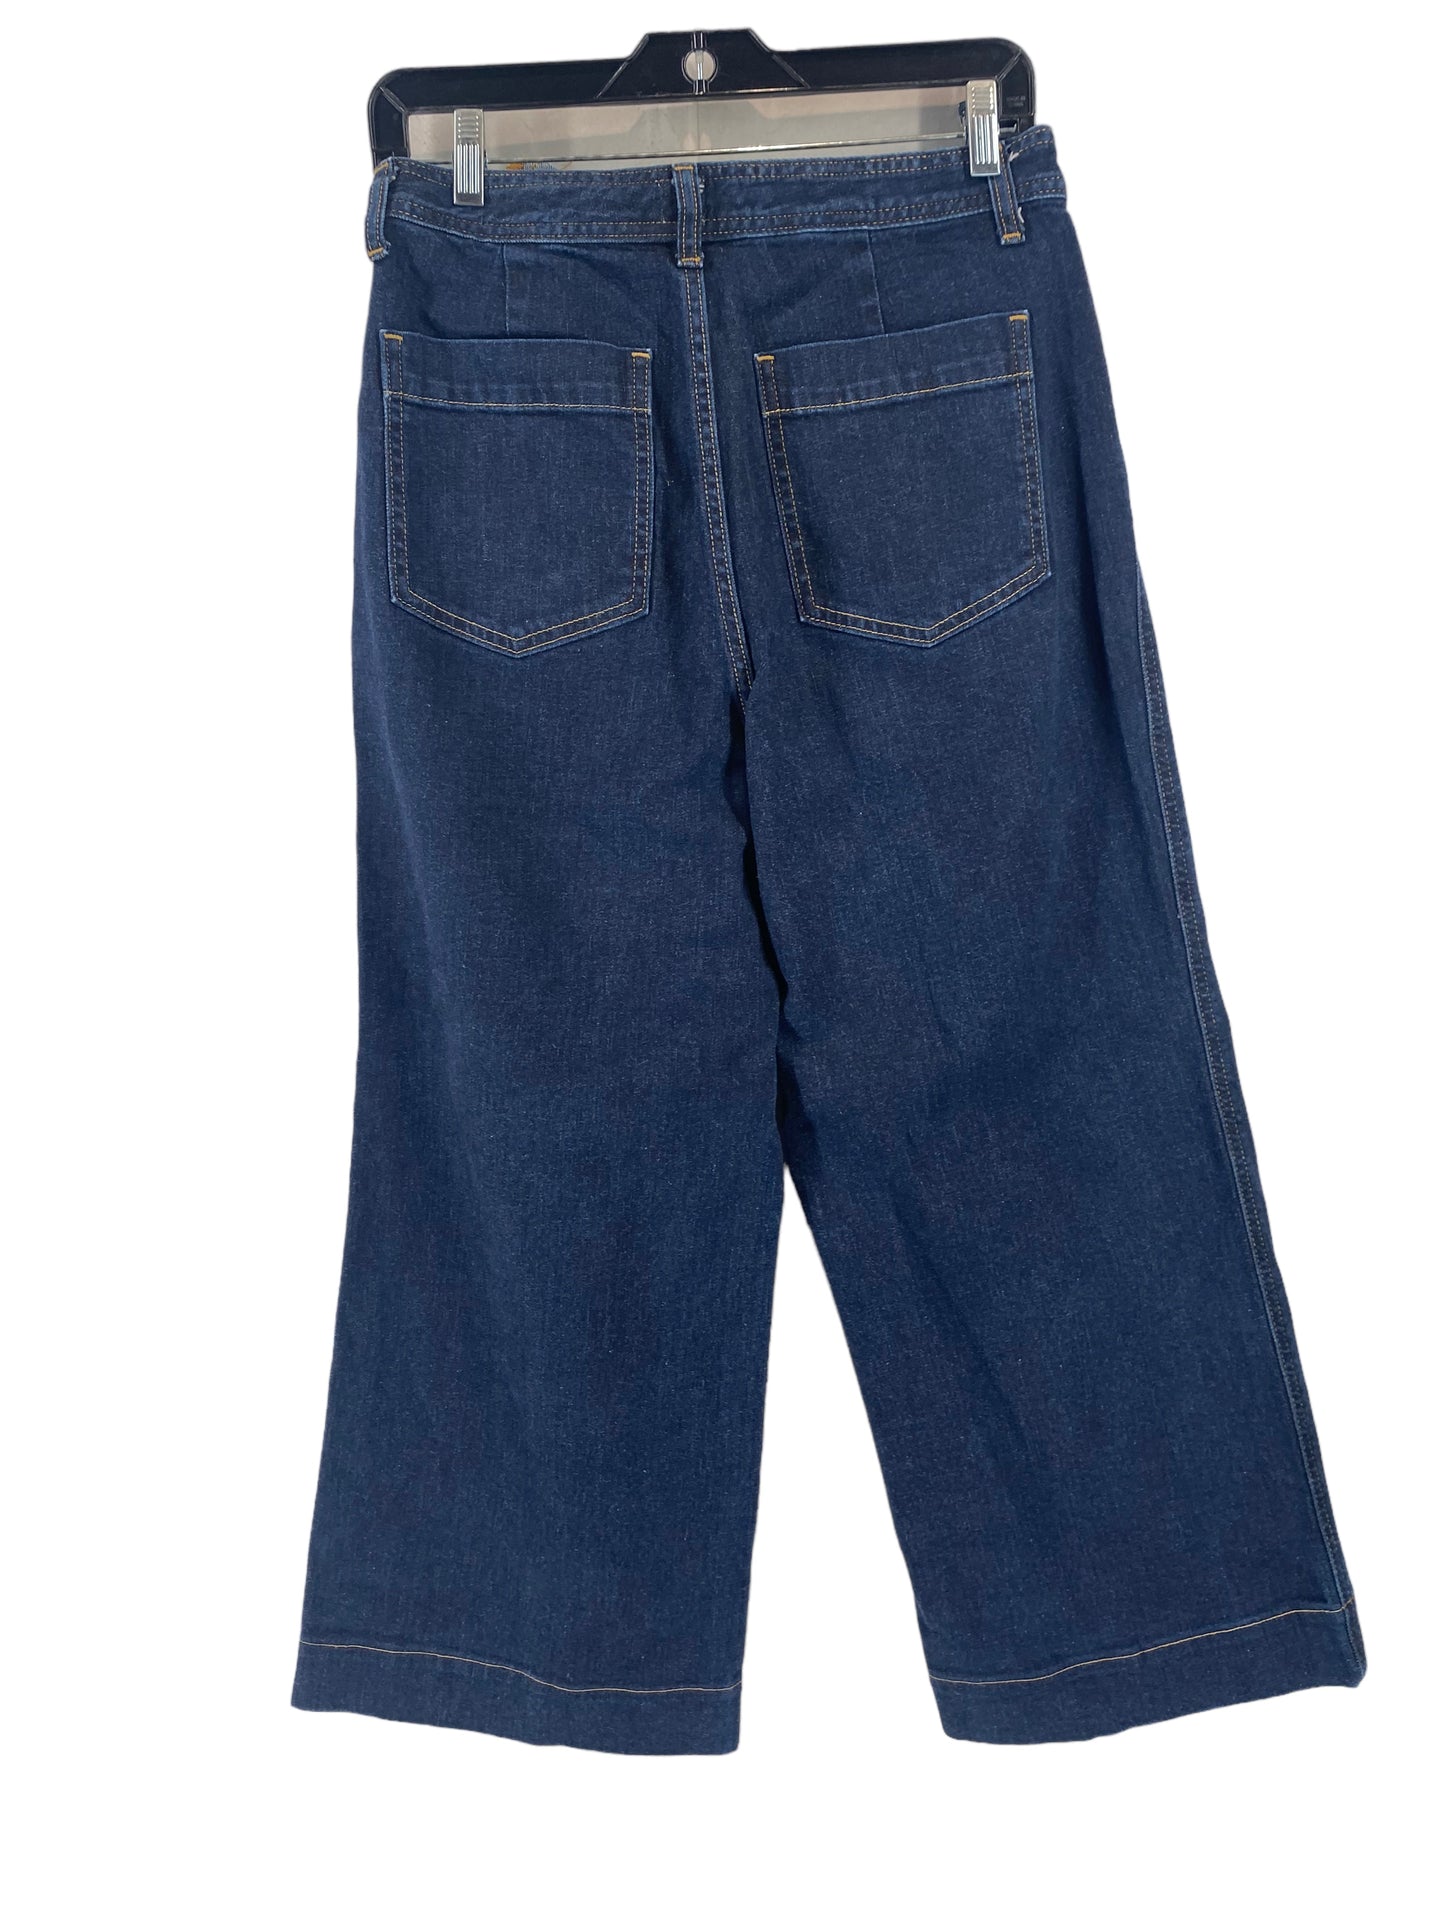 Jeans Wide Leg By Gap  Size: 8